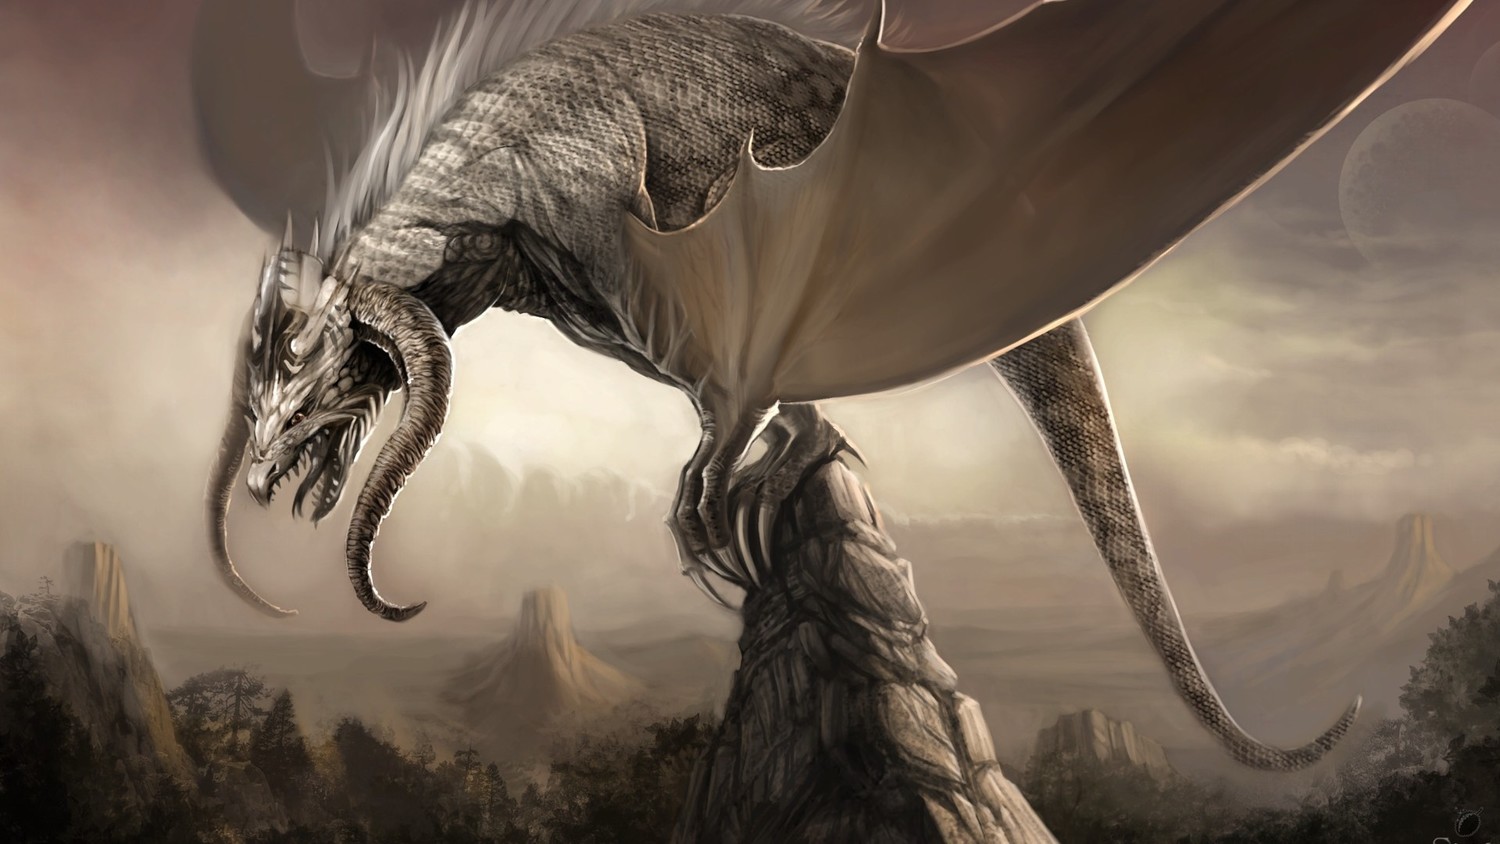 Аспид - в славянской мифологии чудовищный крылатый змей